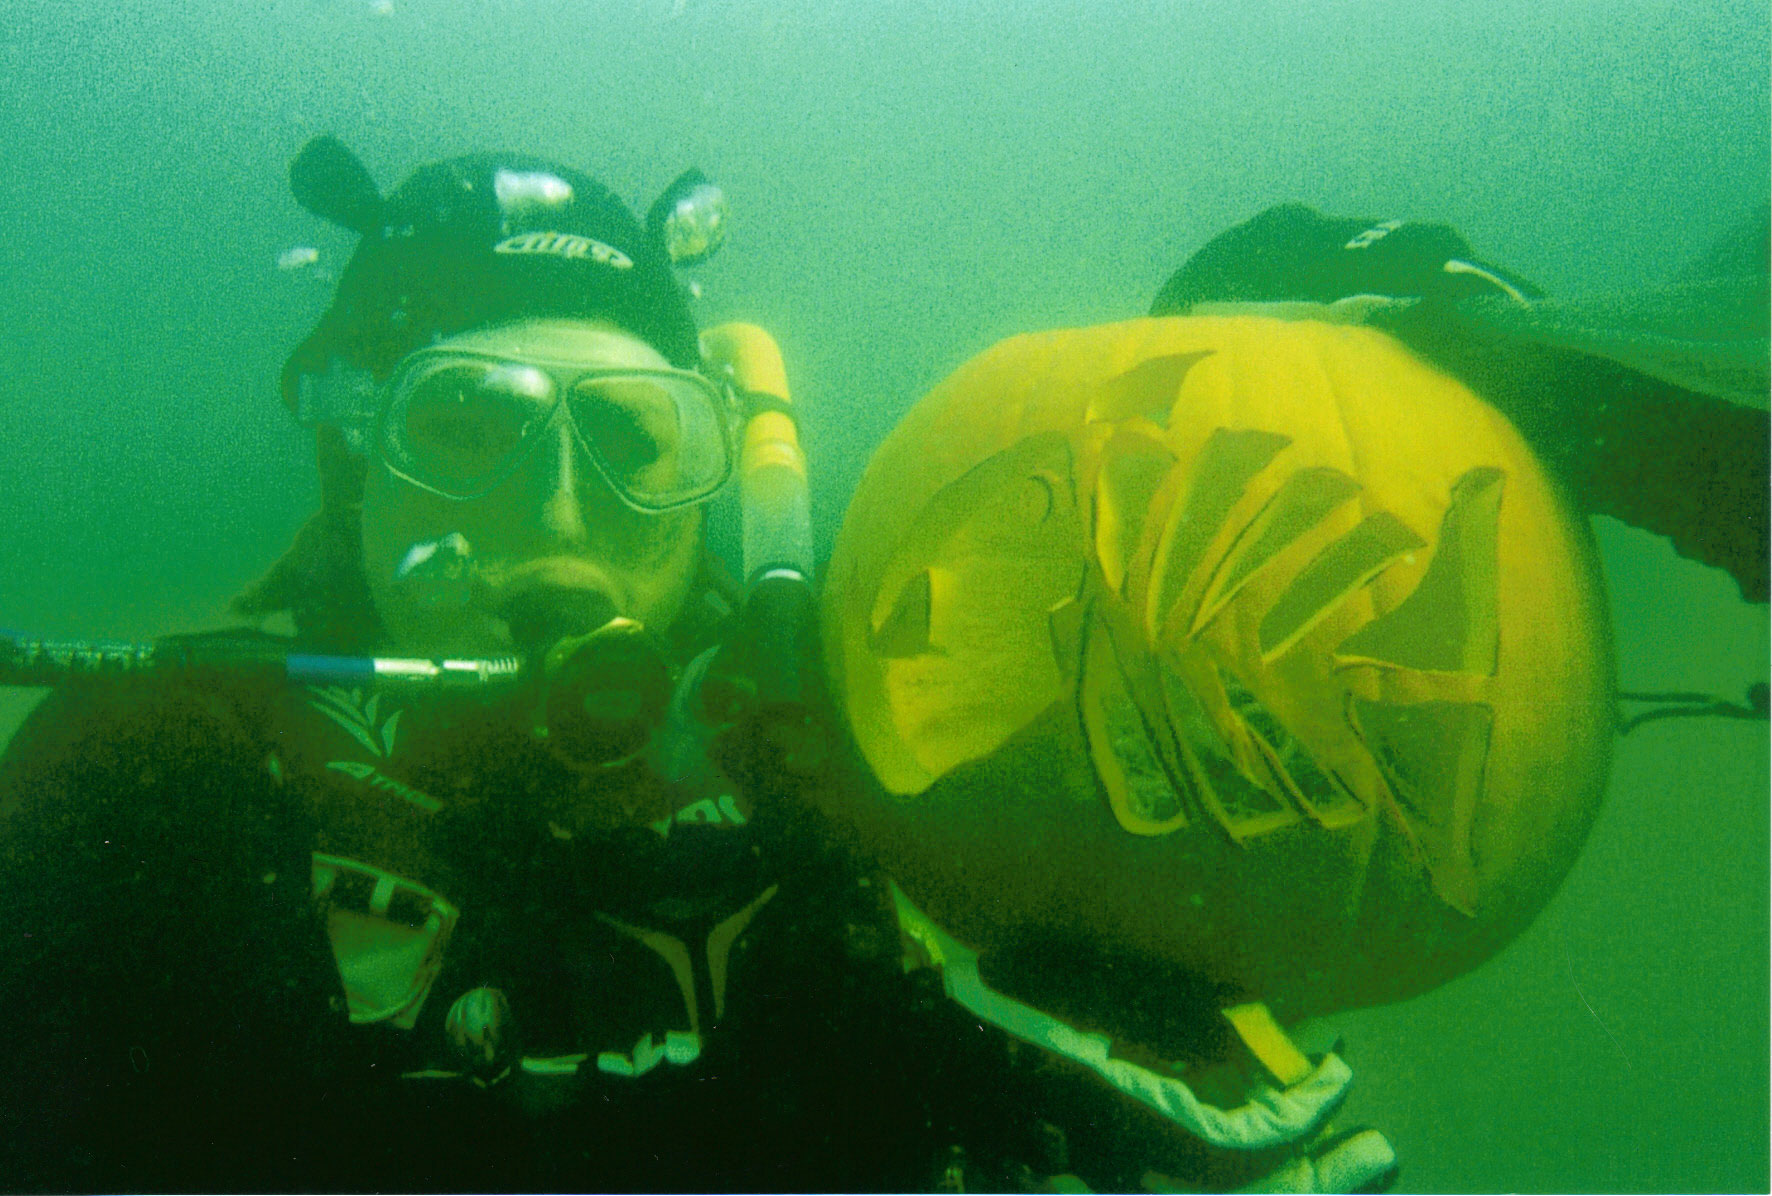 Underwater Pumkin craving contest